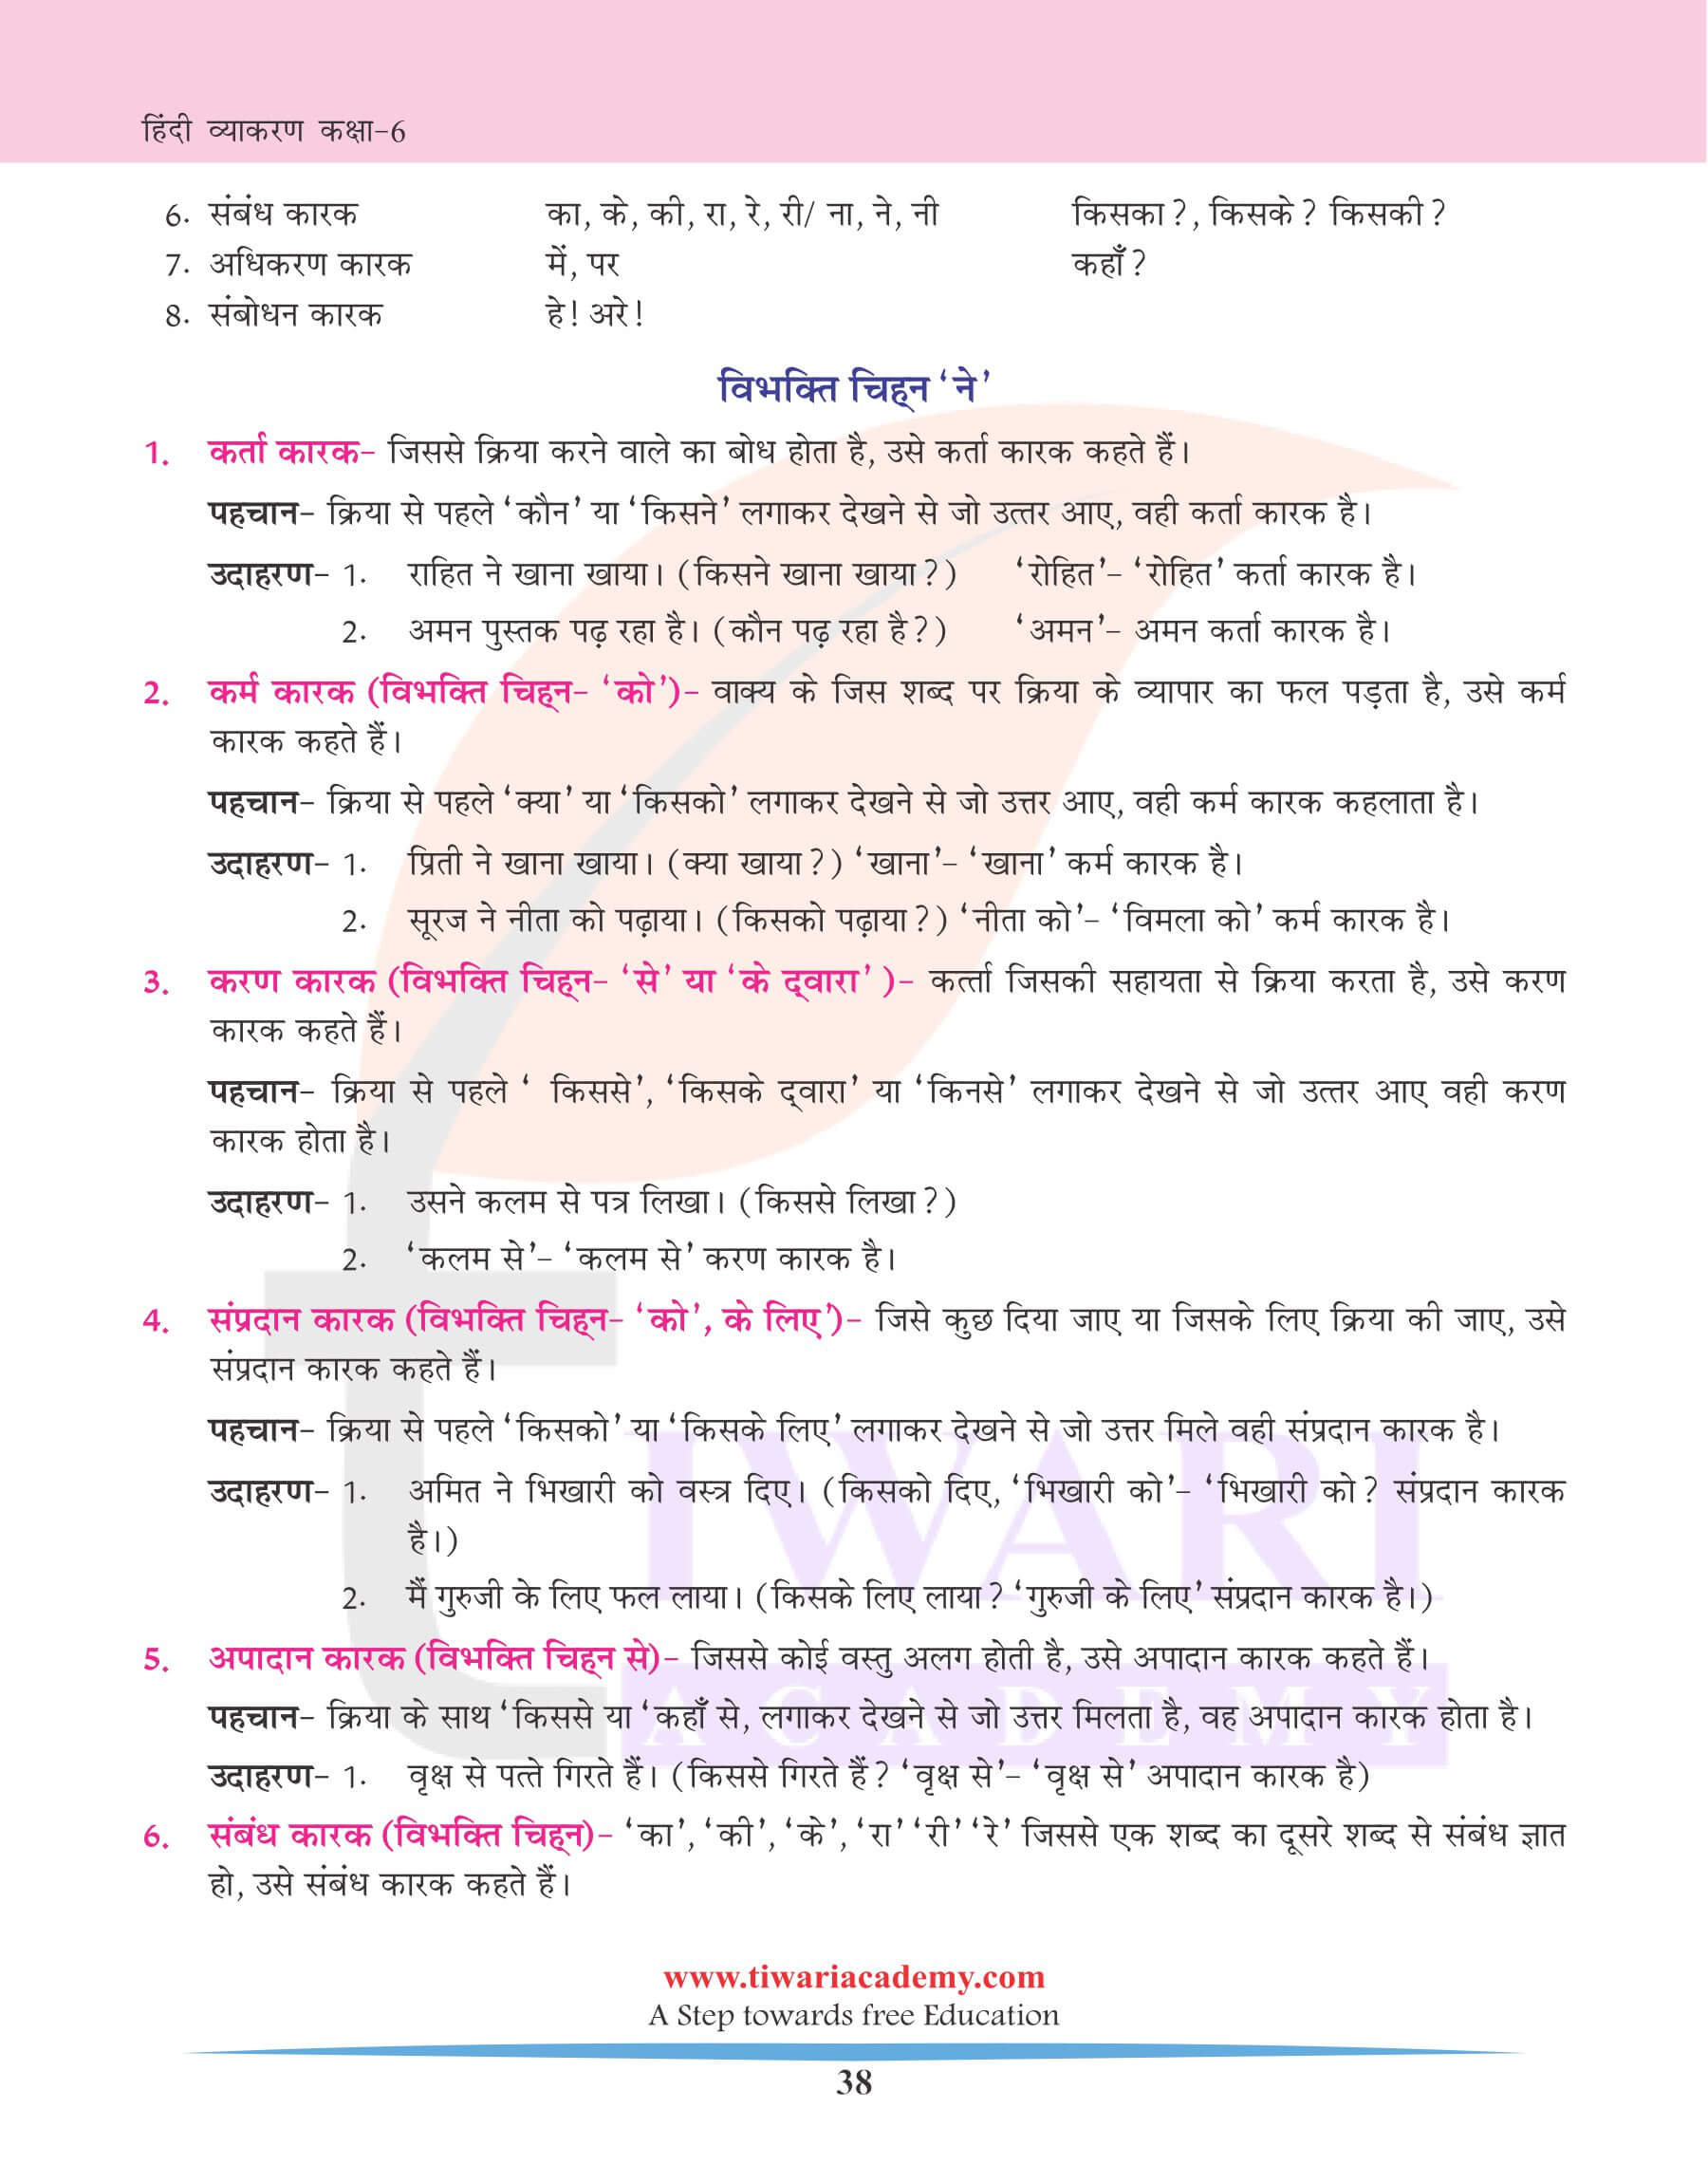 कक्षा 6 हिंदी व्याकरण कारक के भेद